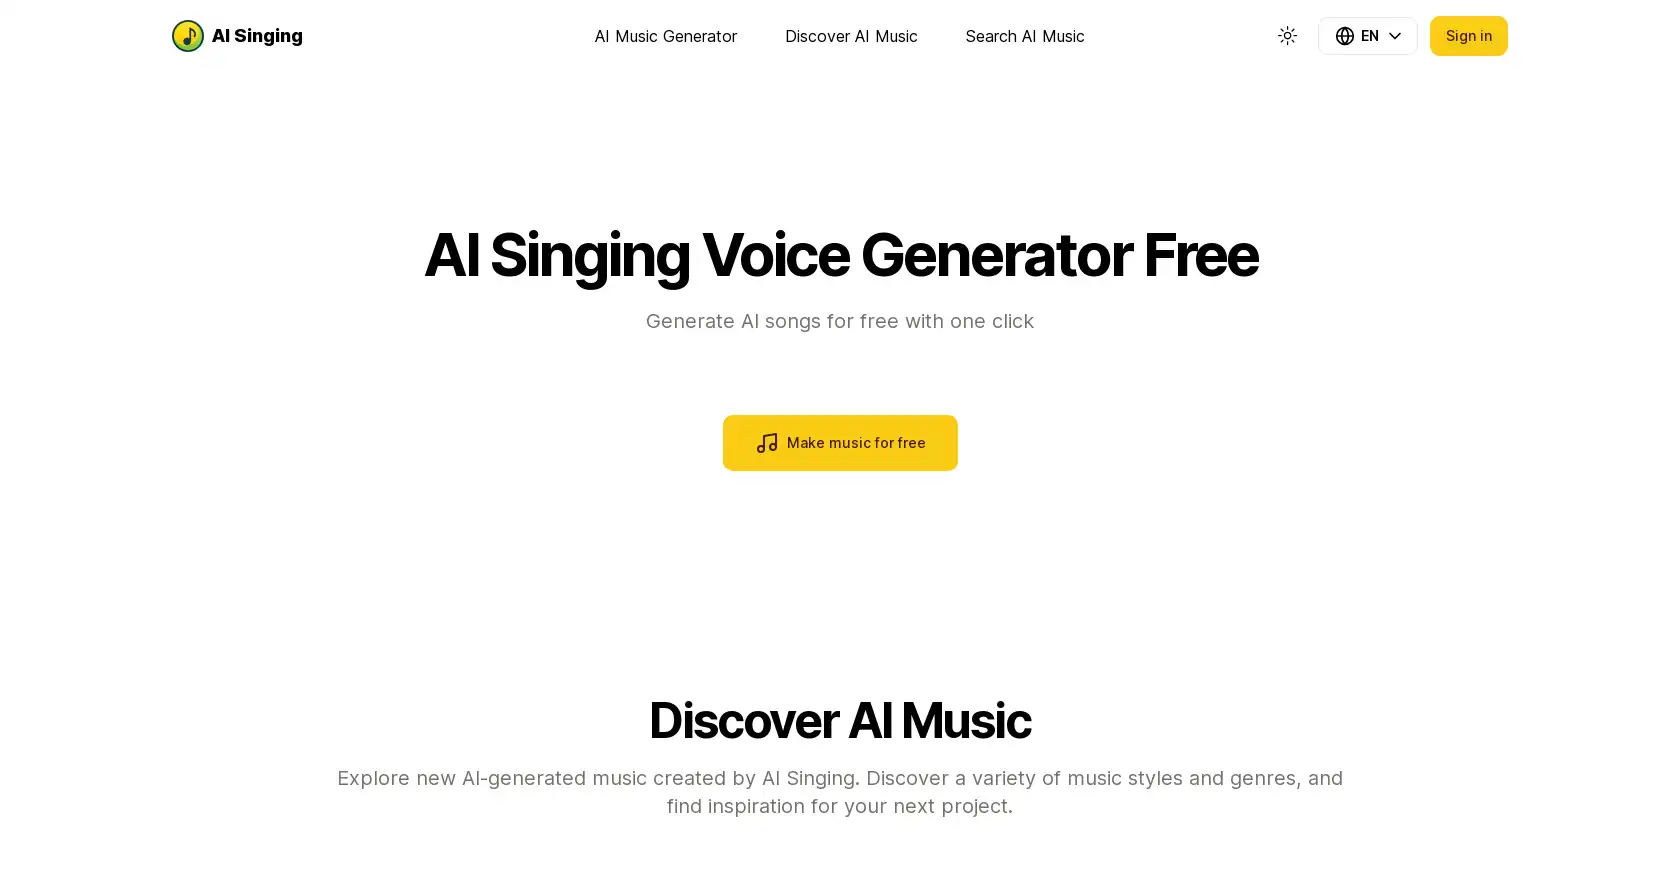 AI Music Generator Free | AI Singing - AI tool for AI, AI music